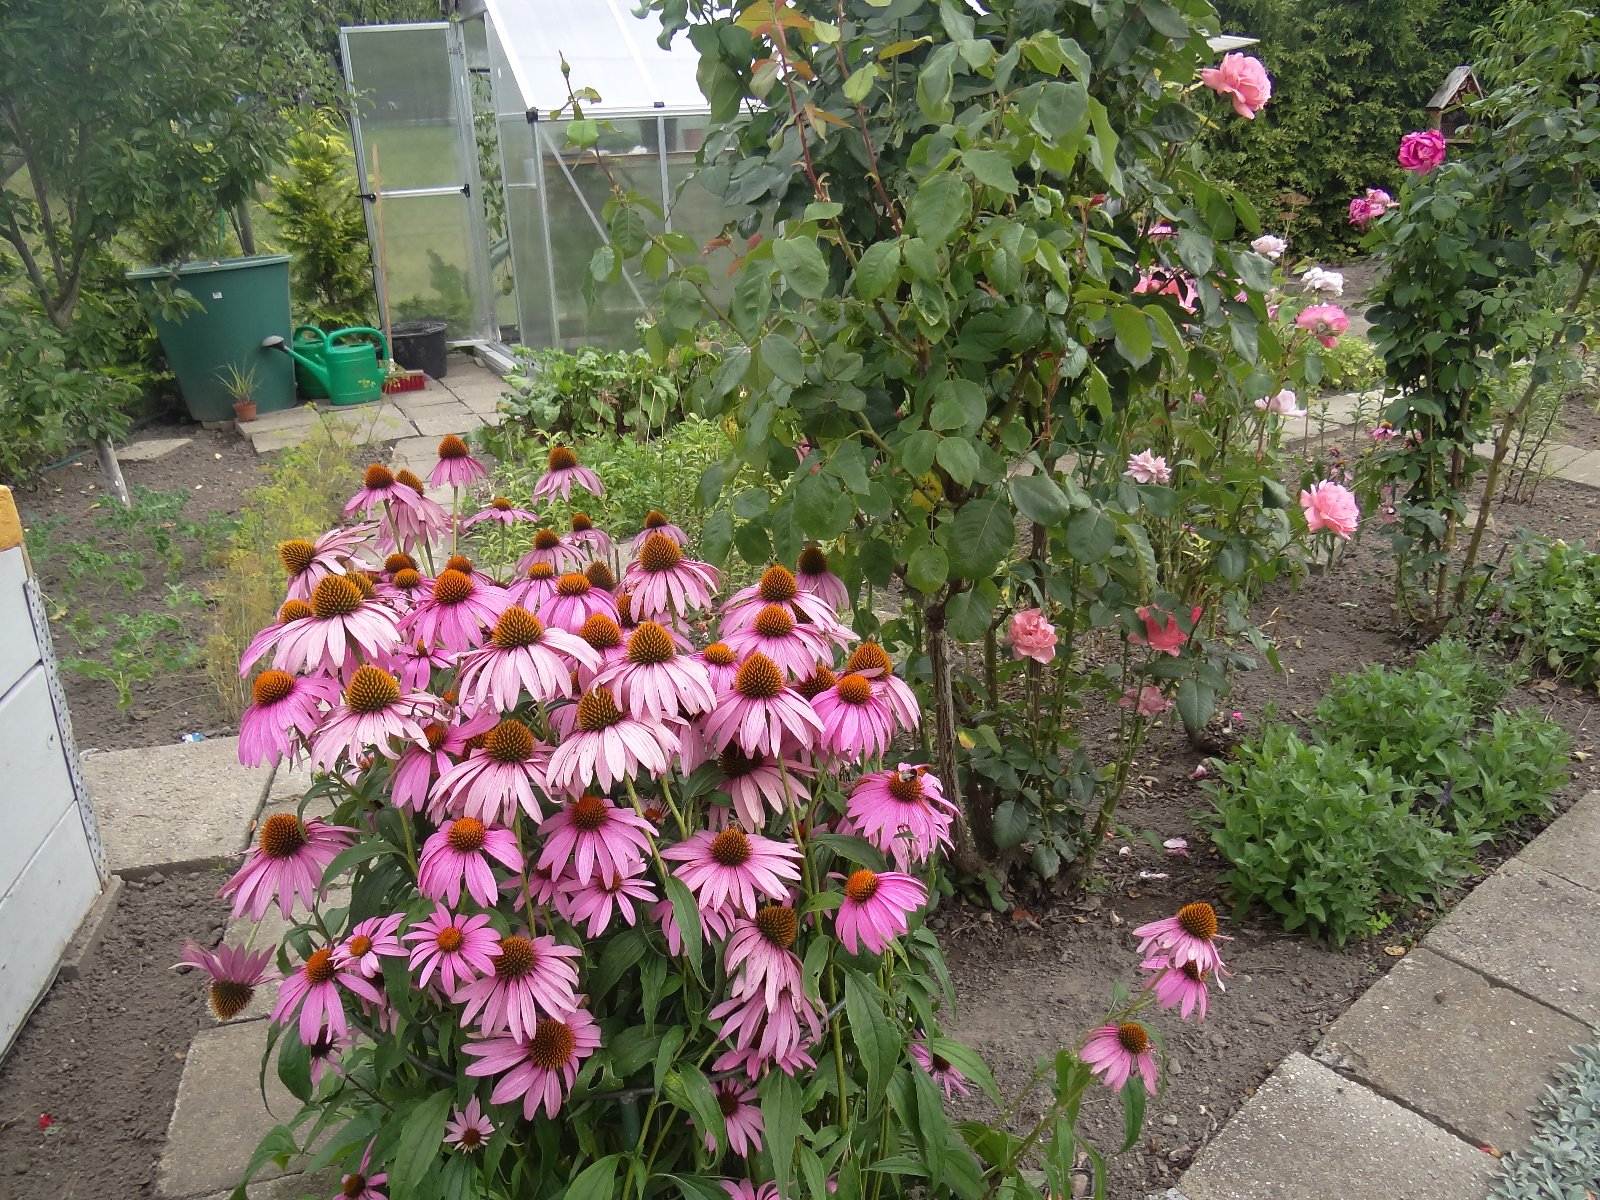 Jeżówka purpurowa,na pierwszym planie widać różowa jeżówka i róże ozdobne, w dalszej części ogrodu działkowego widać szklarnie, zbiornik na deszczówkę, konewki, siewki warzyw